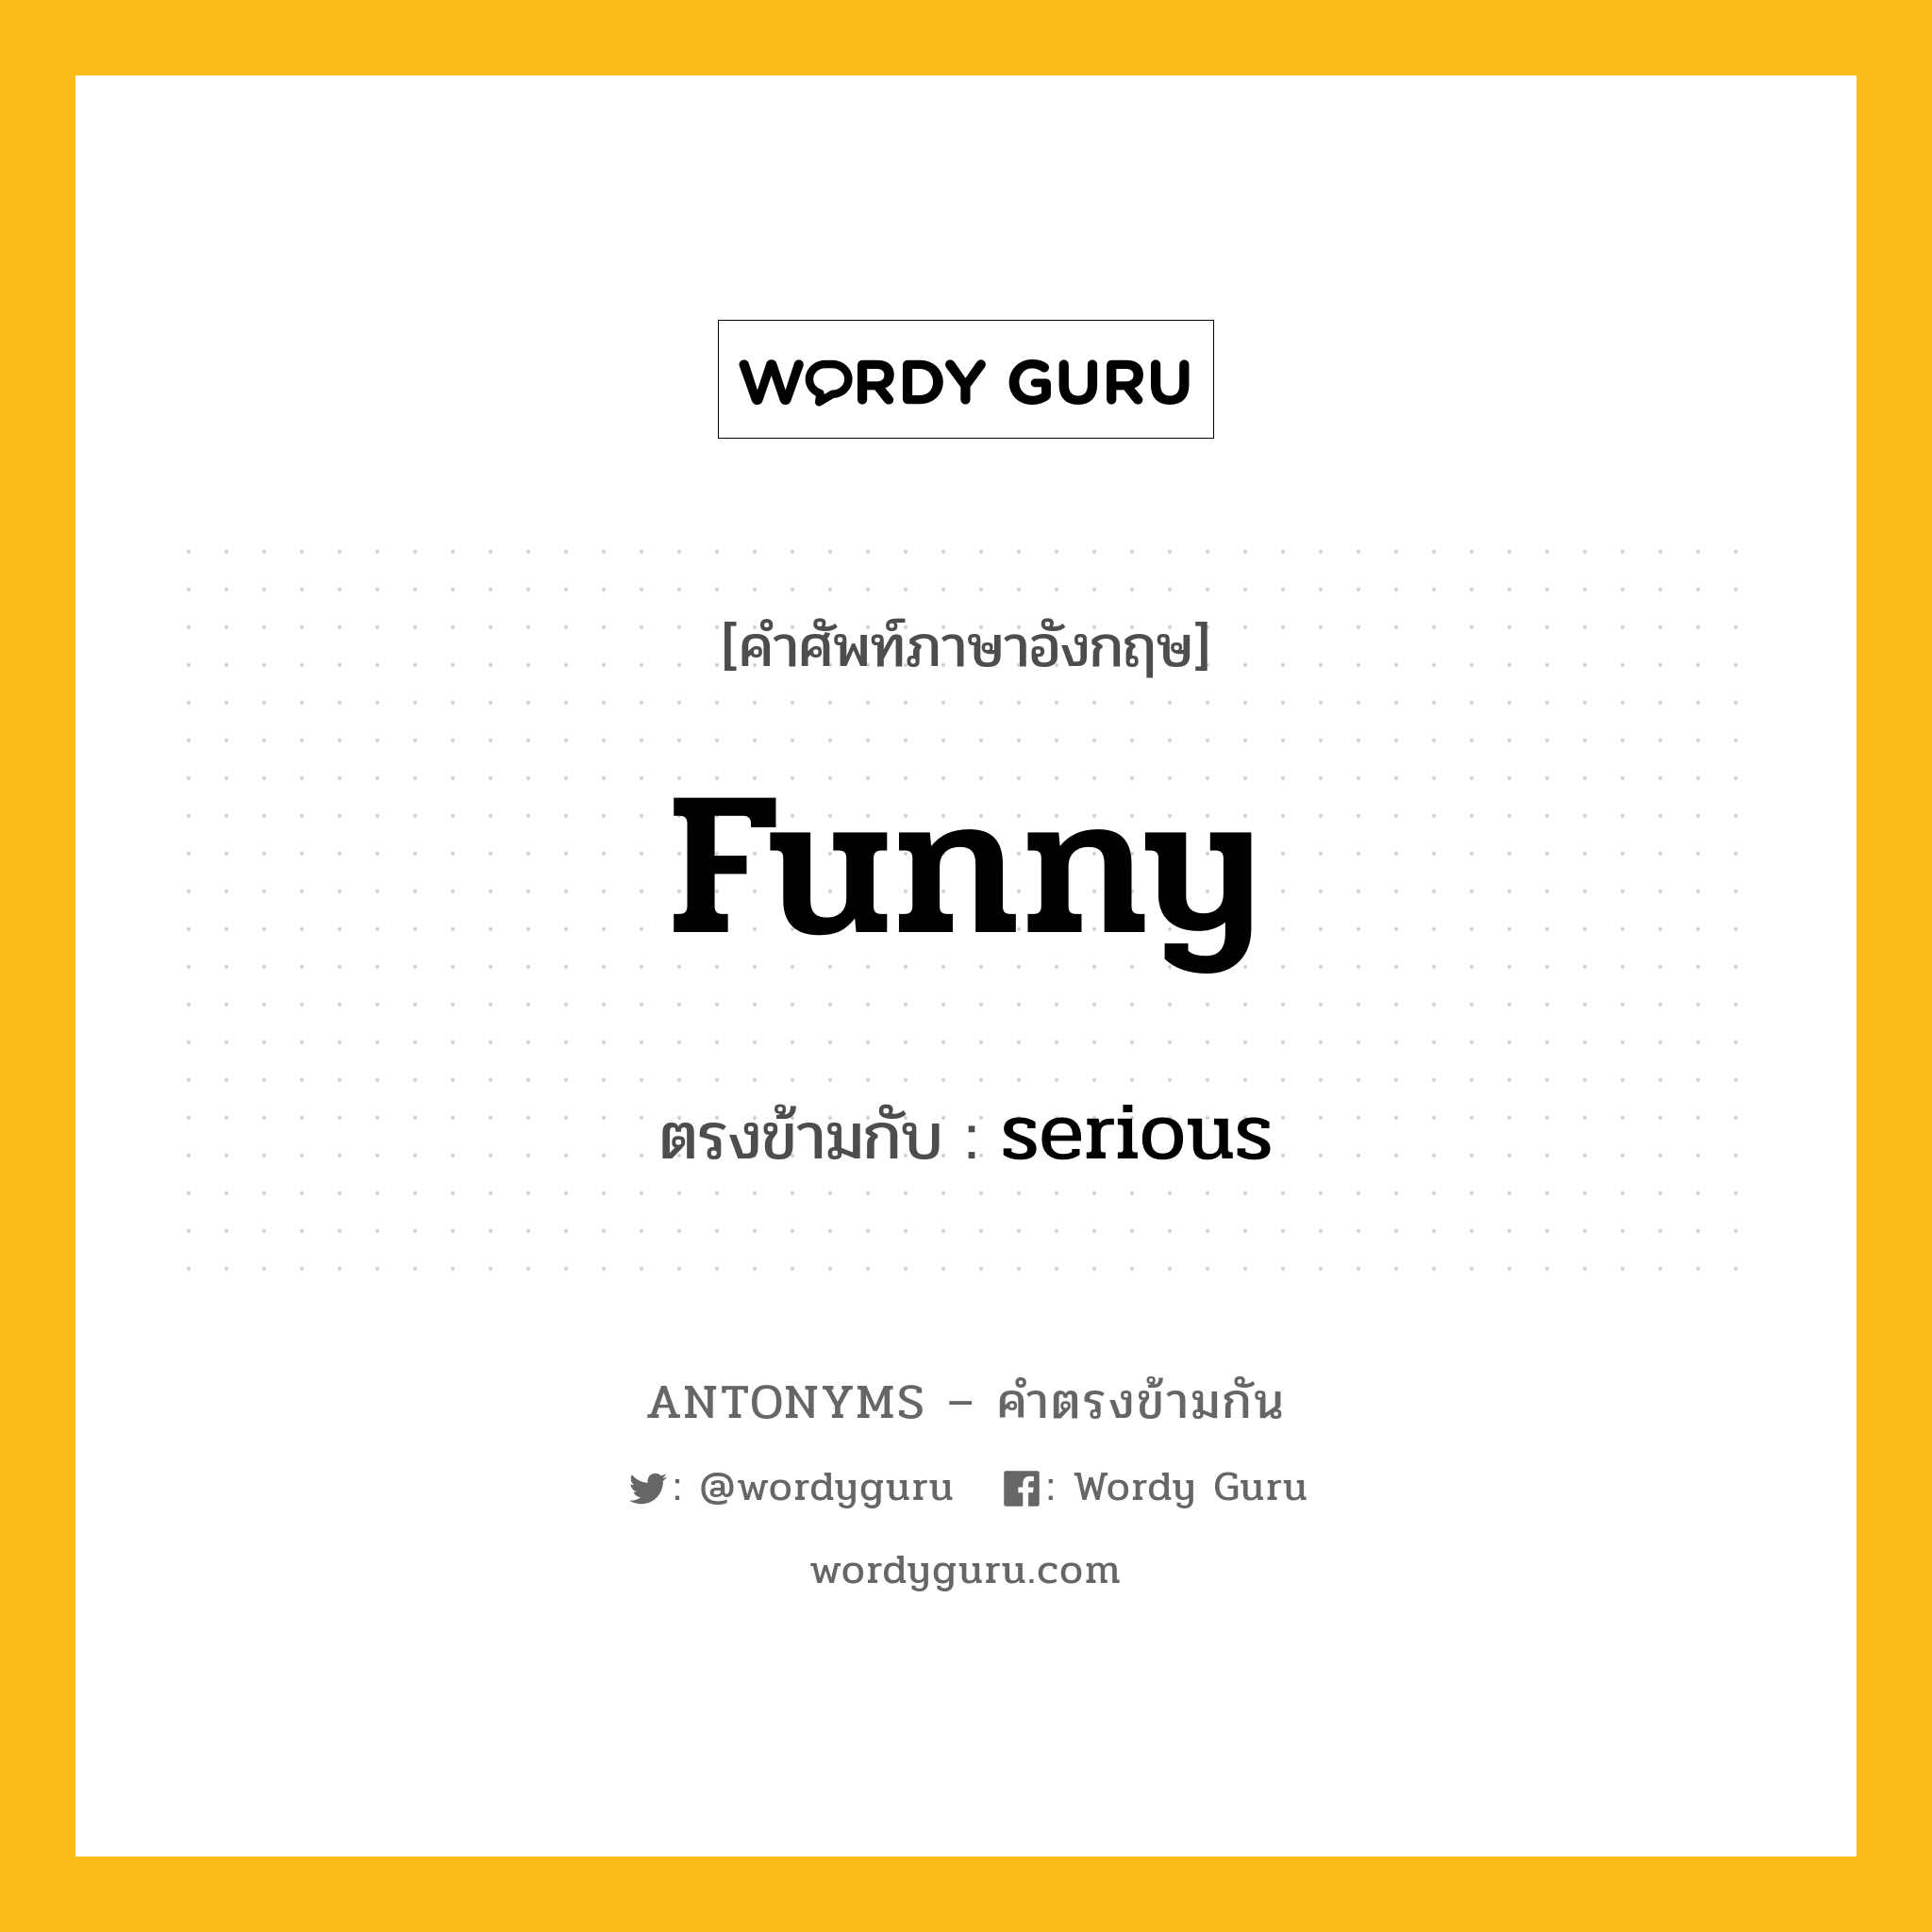 funny เป็นคำตรงข้ามกับคำไหนบ้าง?, คำศัพท์ภาษาอังกฤษ funny ตรงข้ามกับ serious หมวด serious